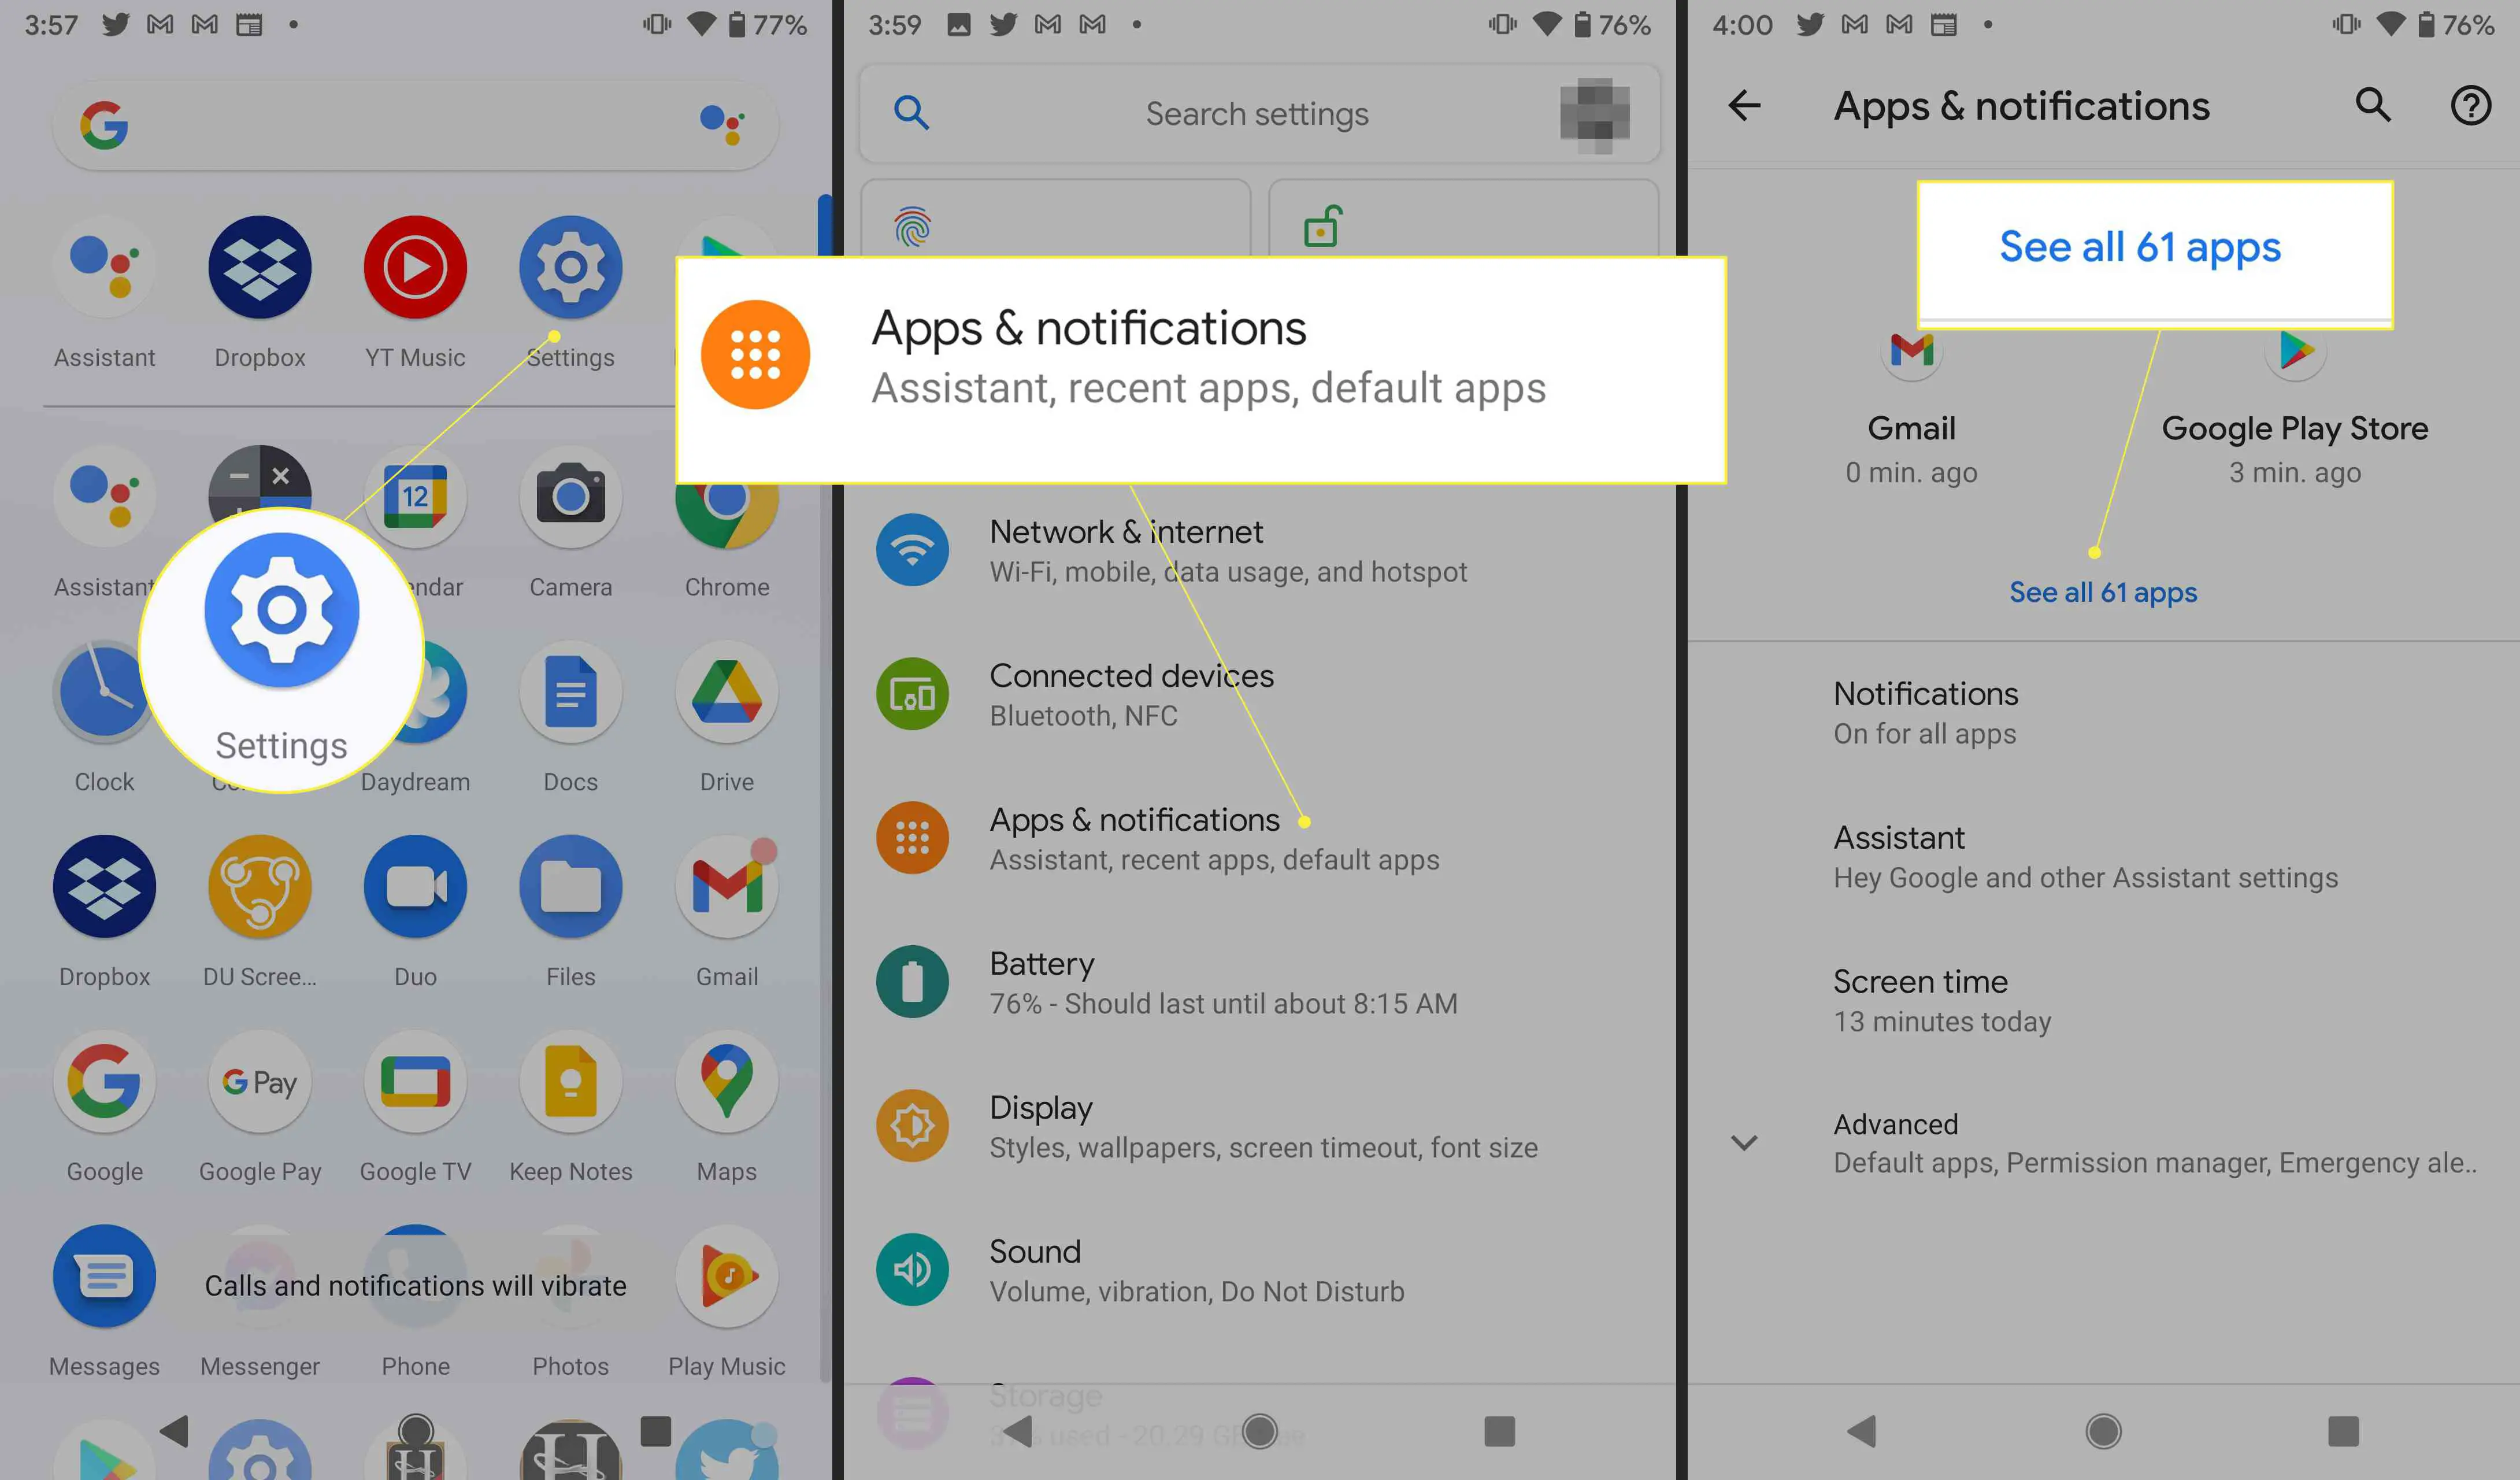 Configurações do Android com "Aplicativos e notificações" e "Ver todos os aplicativos" destacados